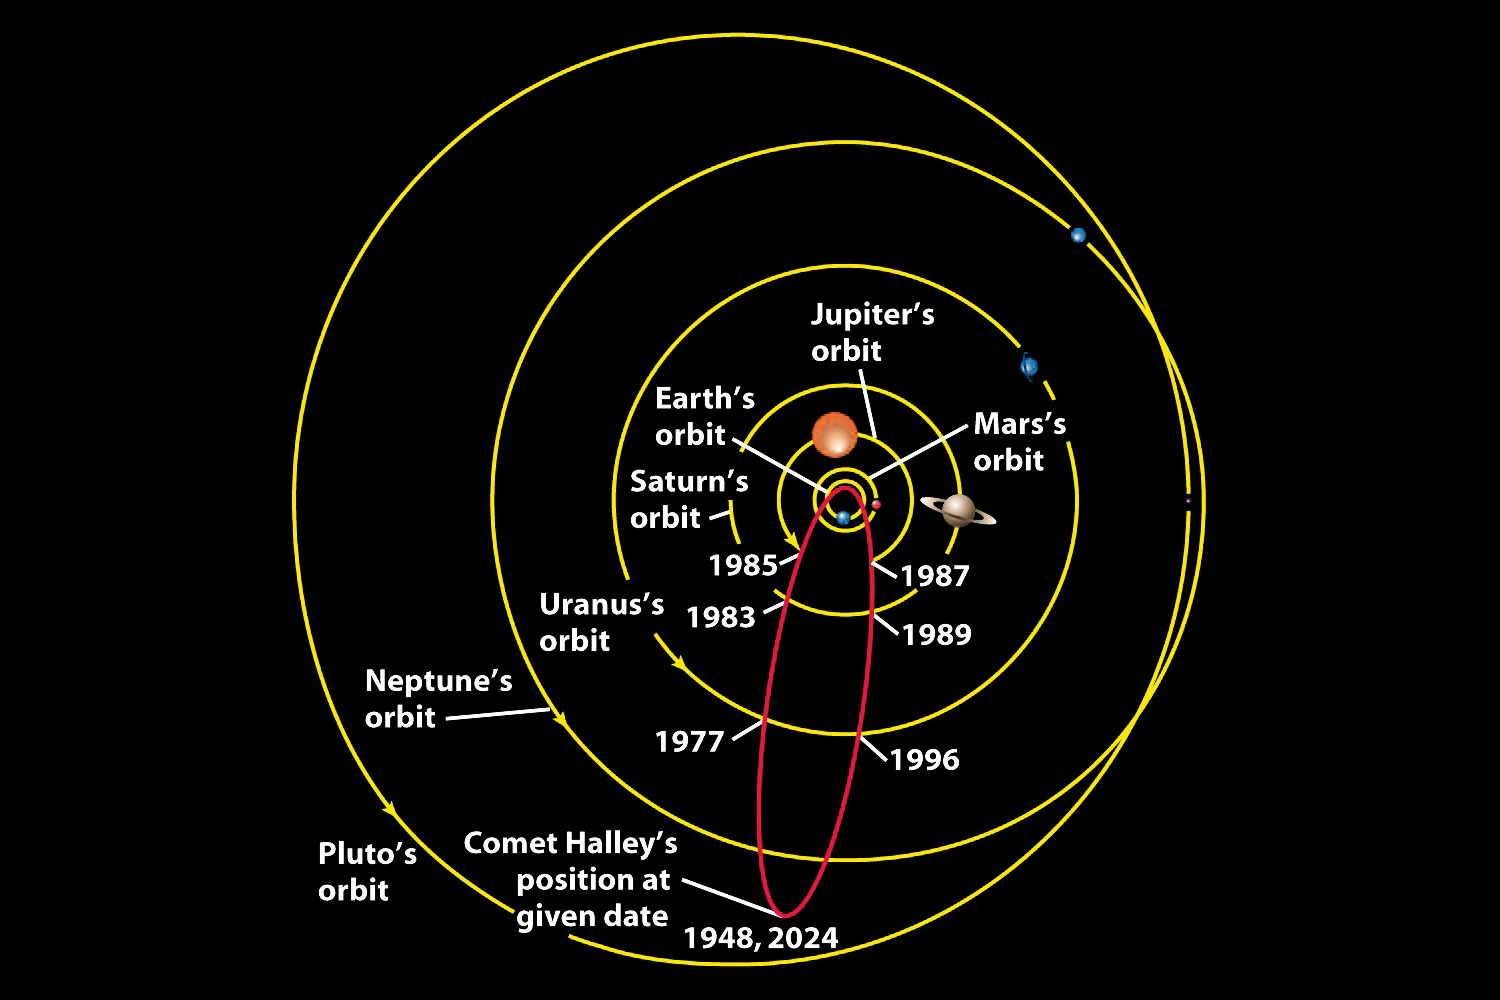 Halley's comet orbit around the sun, short period comet, next return